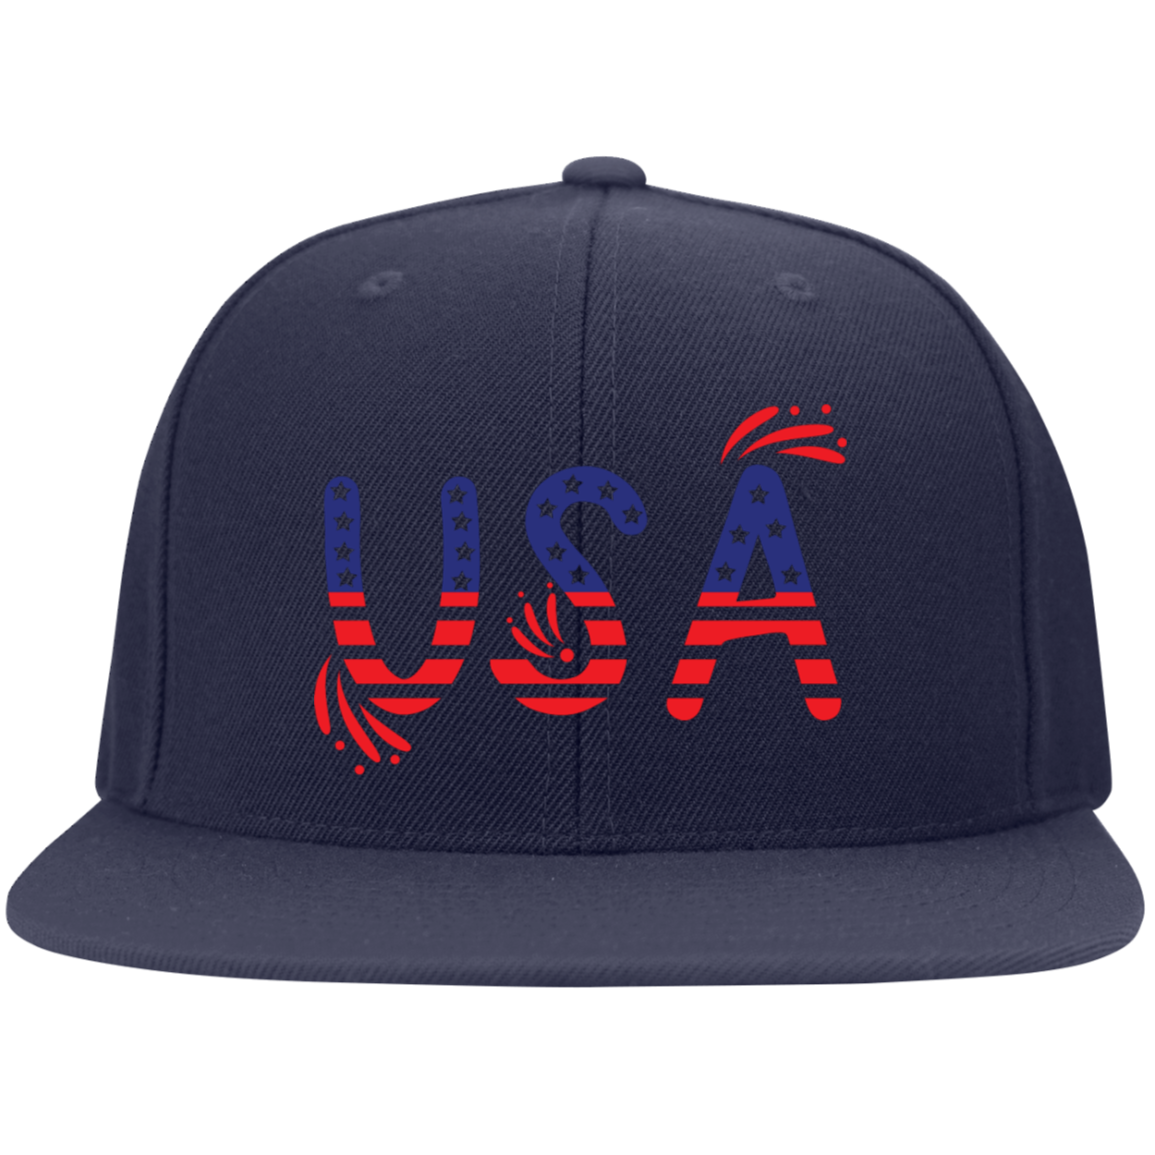 USA -- Embroidered Flat Bill Twill -- Flexfit Cap